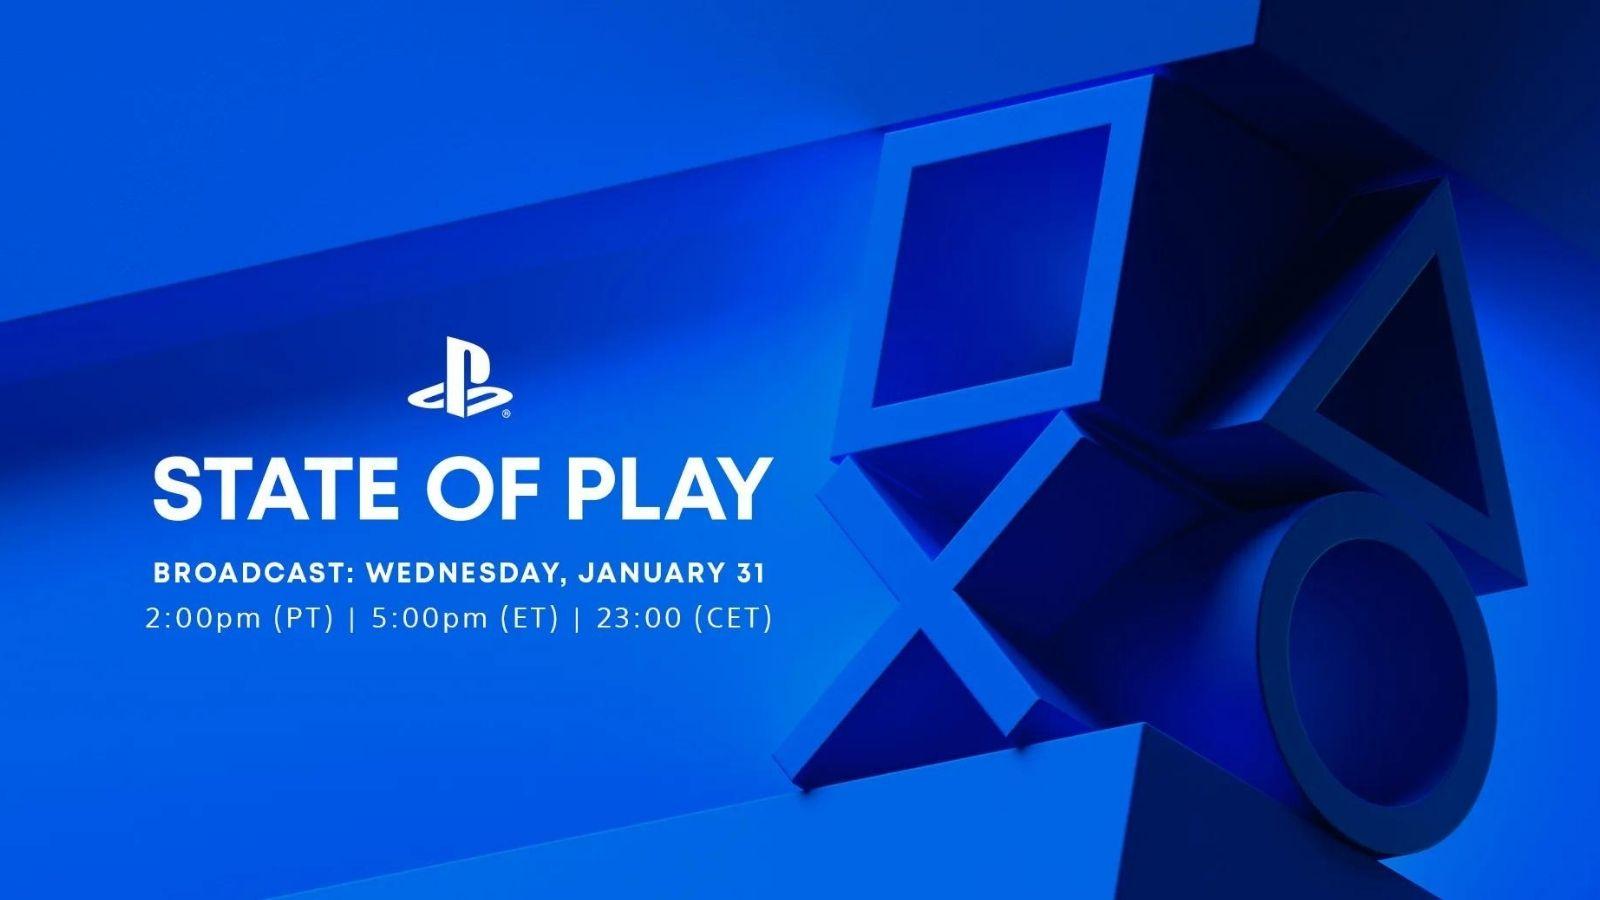 PlayStation State of Play etkinliği  1 Şubat'ta gerçekleşecek